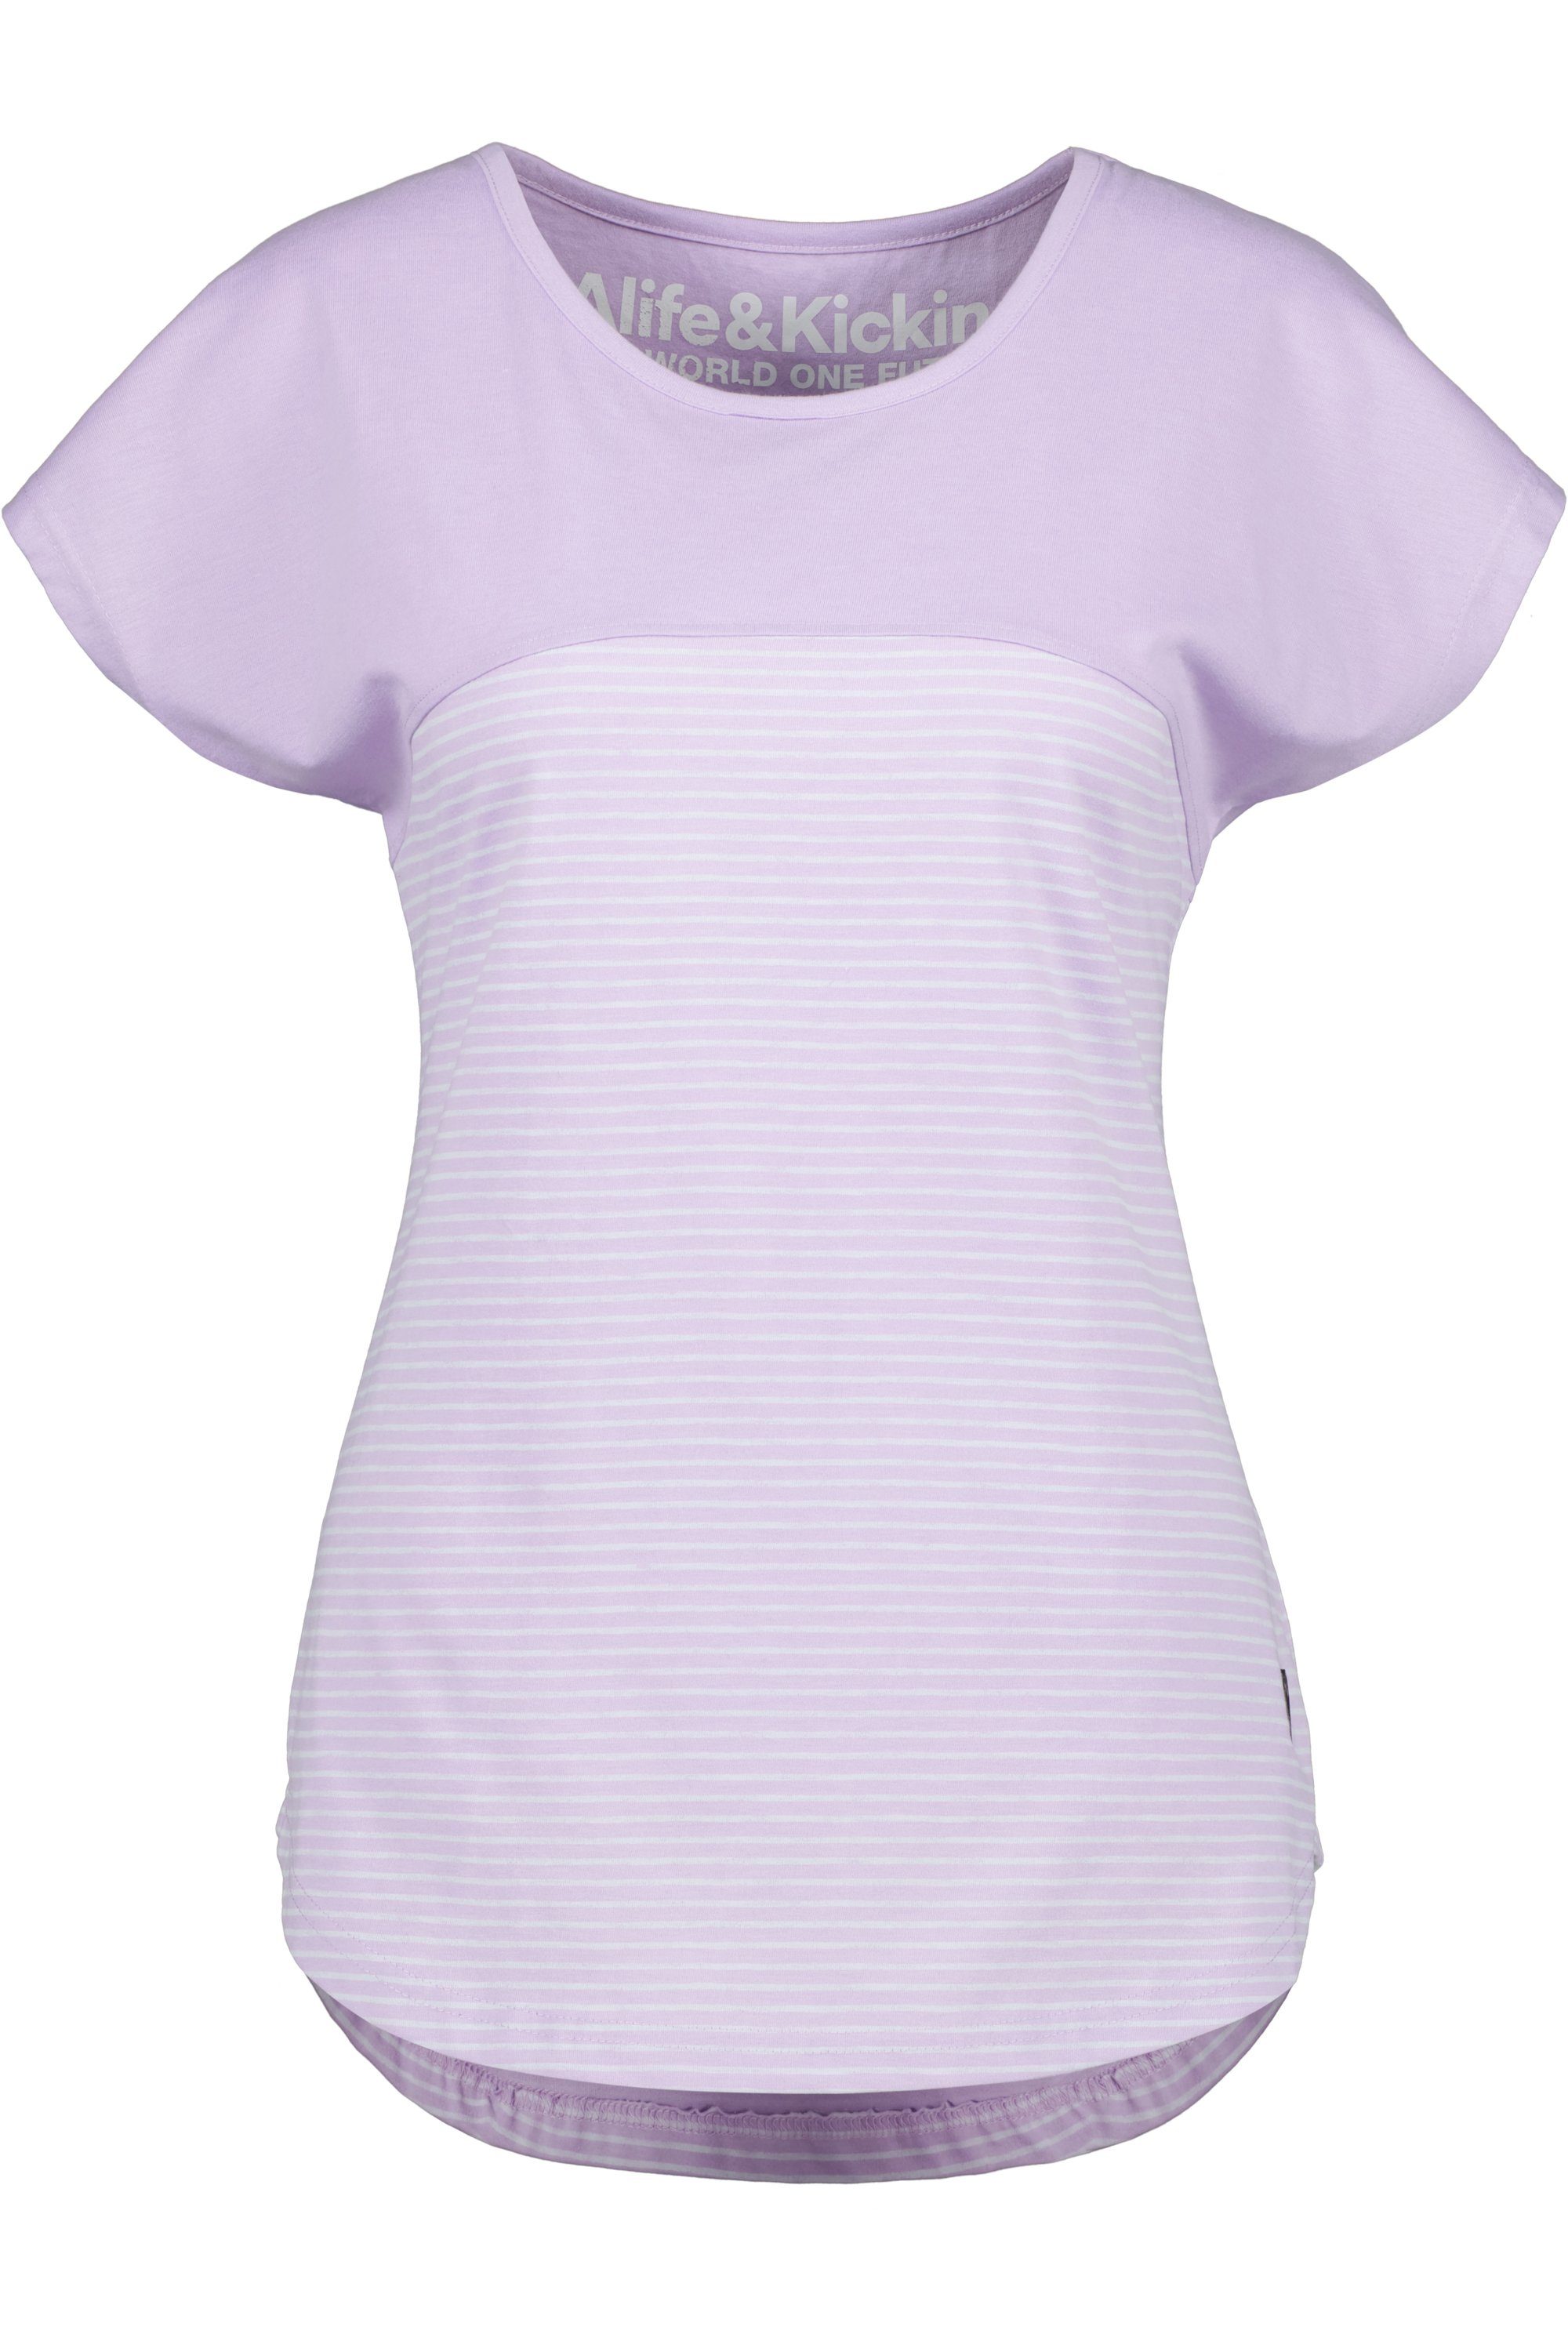 digital Z ClarettaAK Rundhalsshirt Shirt & Shirt lavender Damen Kickin Alife Kurzarmshirt,